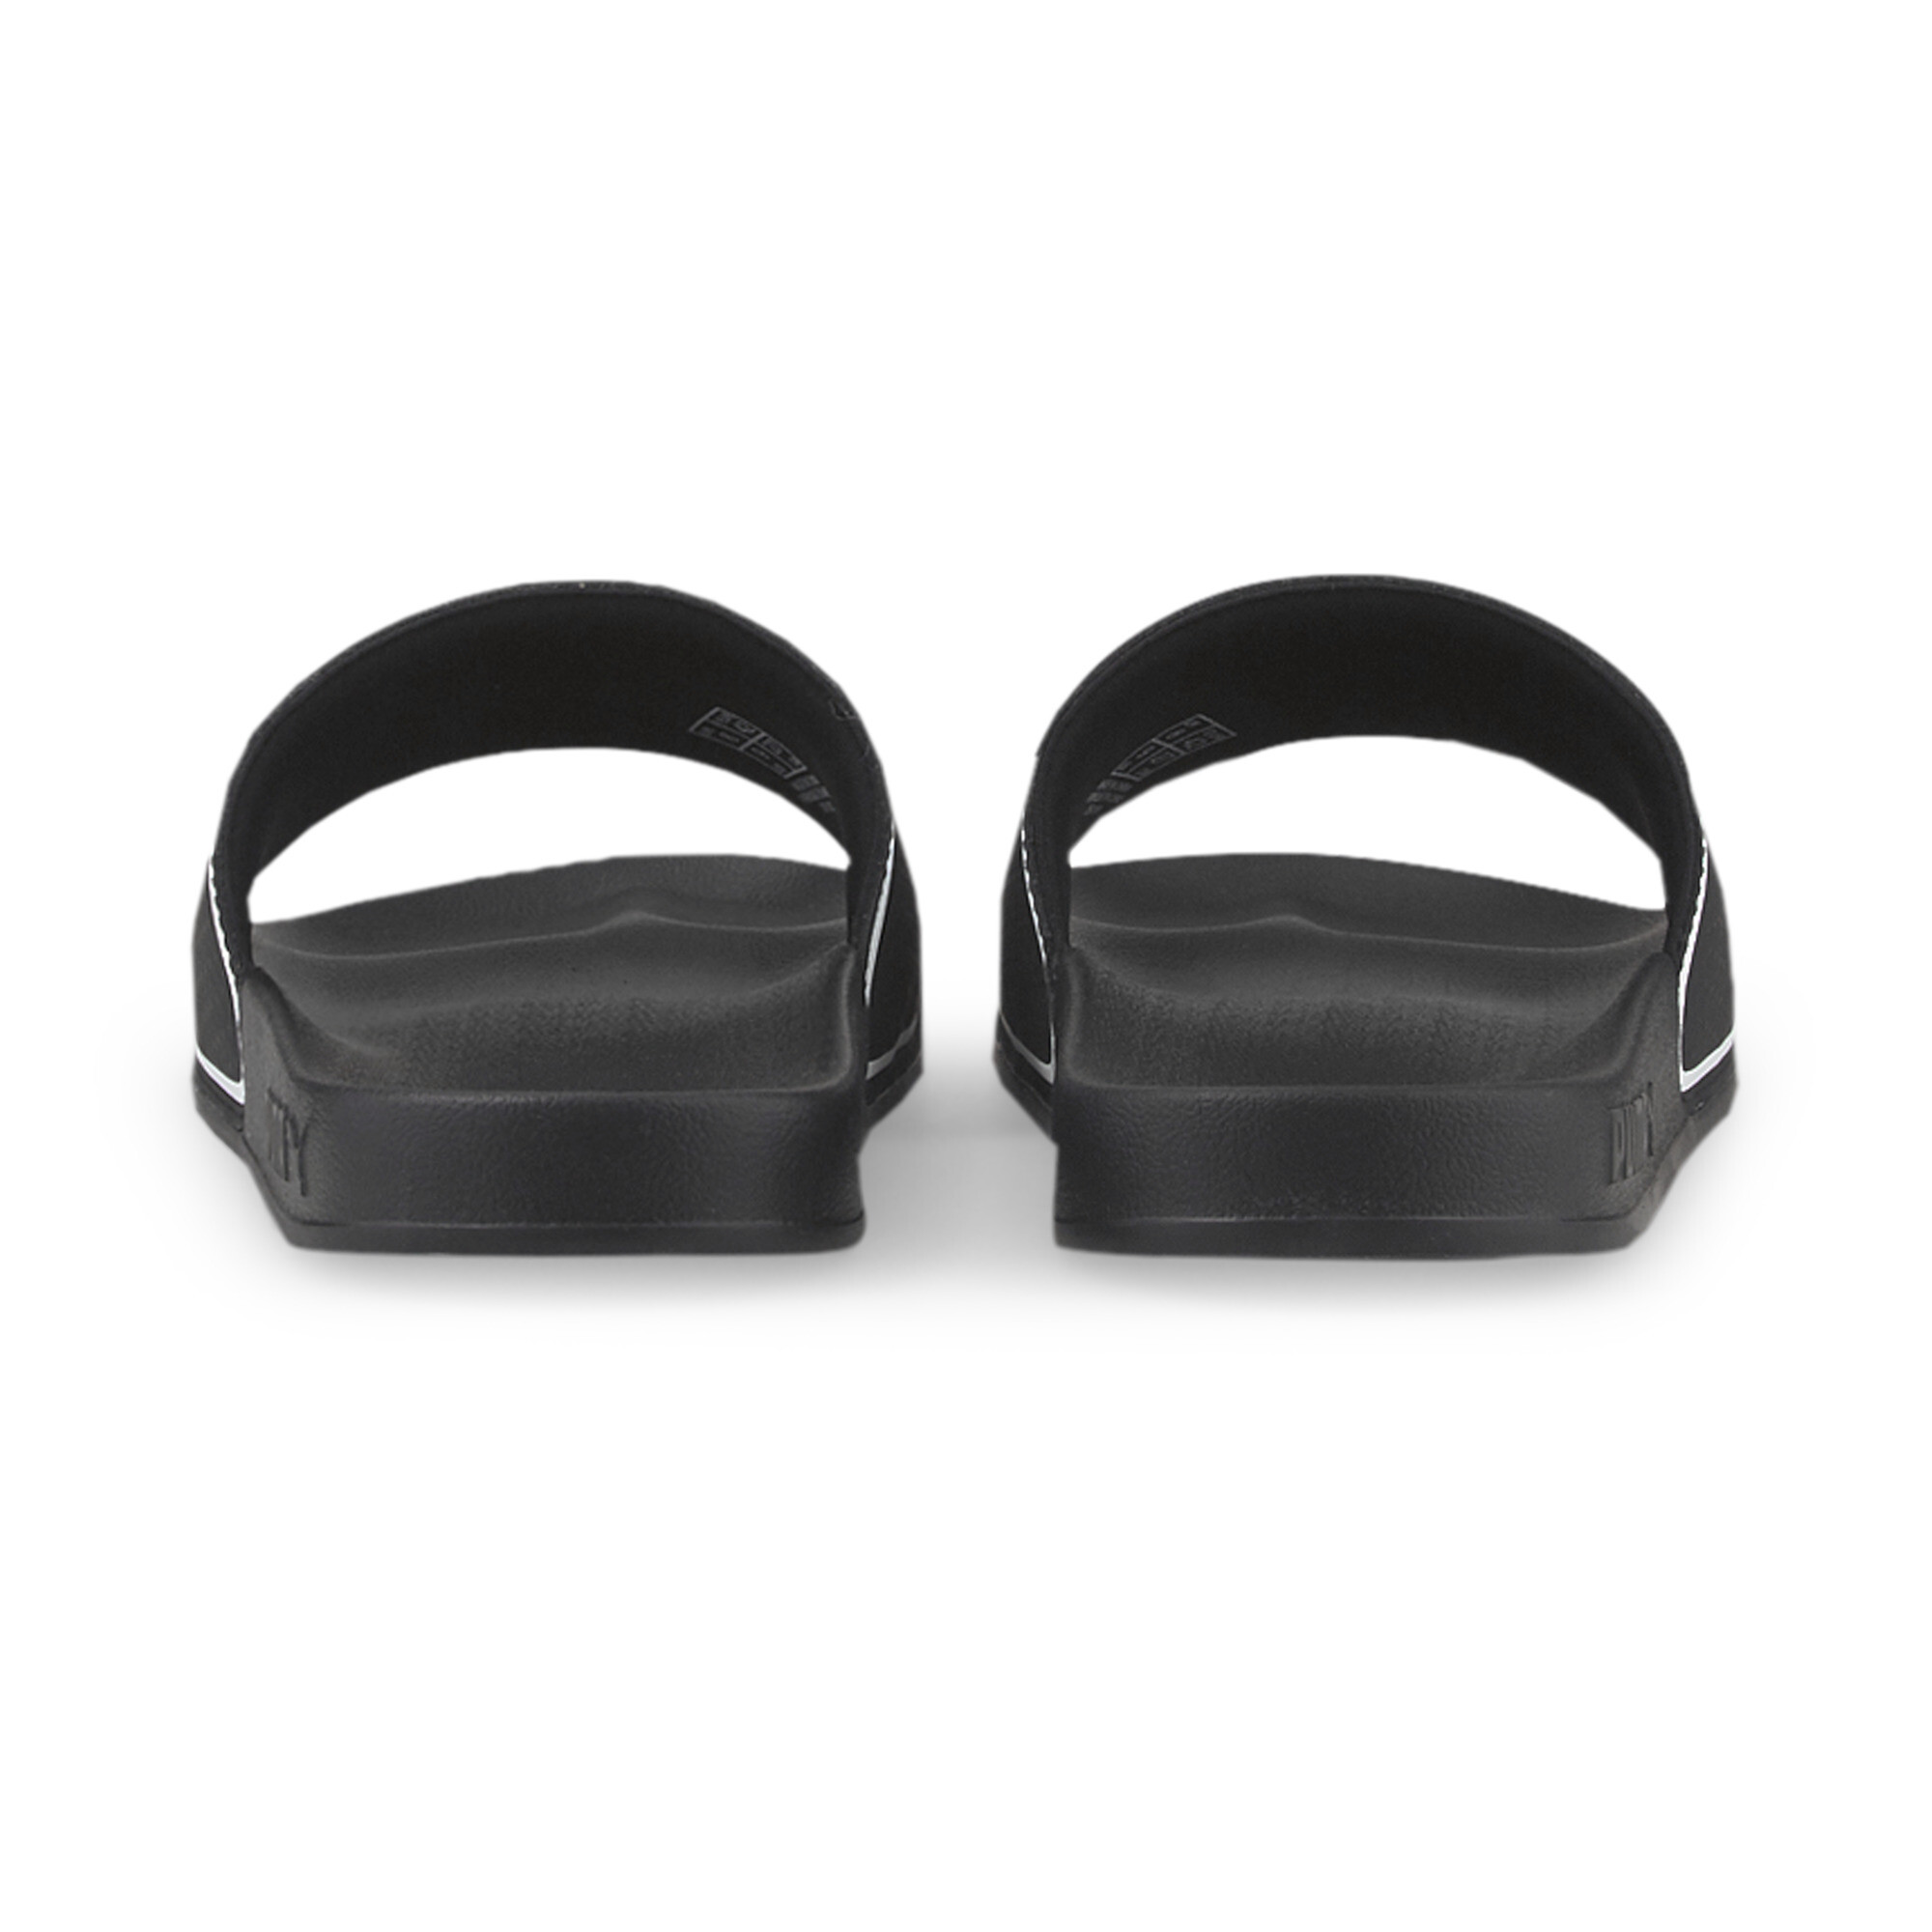 Men's PUMA Leadcat 2.0 Sandals In Black, Size EU 37